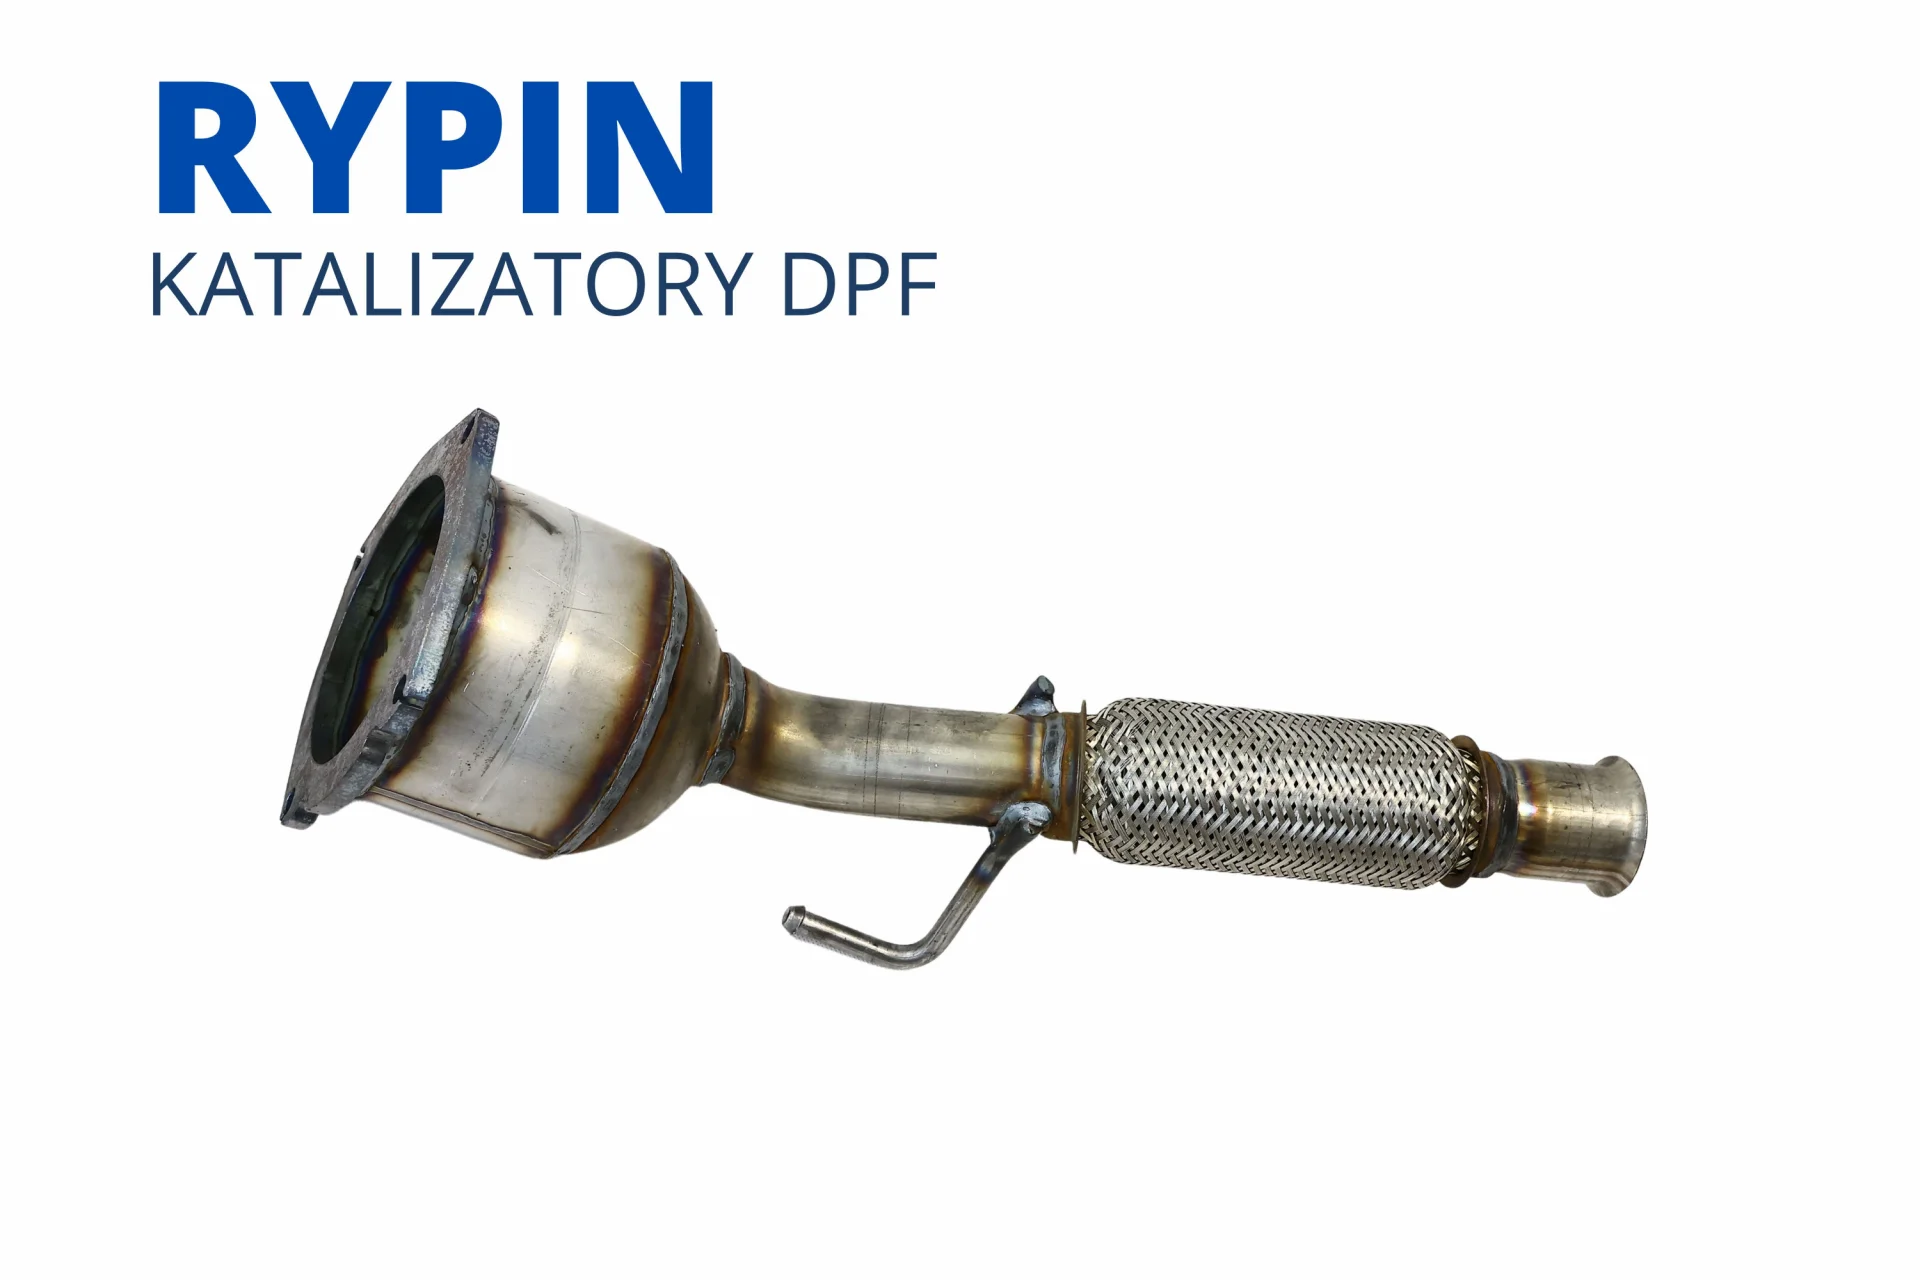 Katalizatory DPF FAP SCR Rypin nowy cena